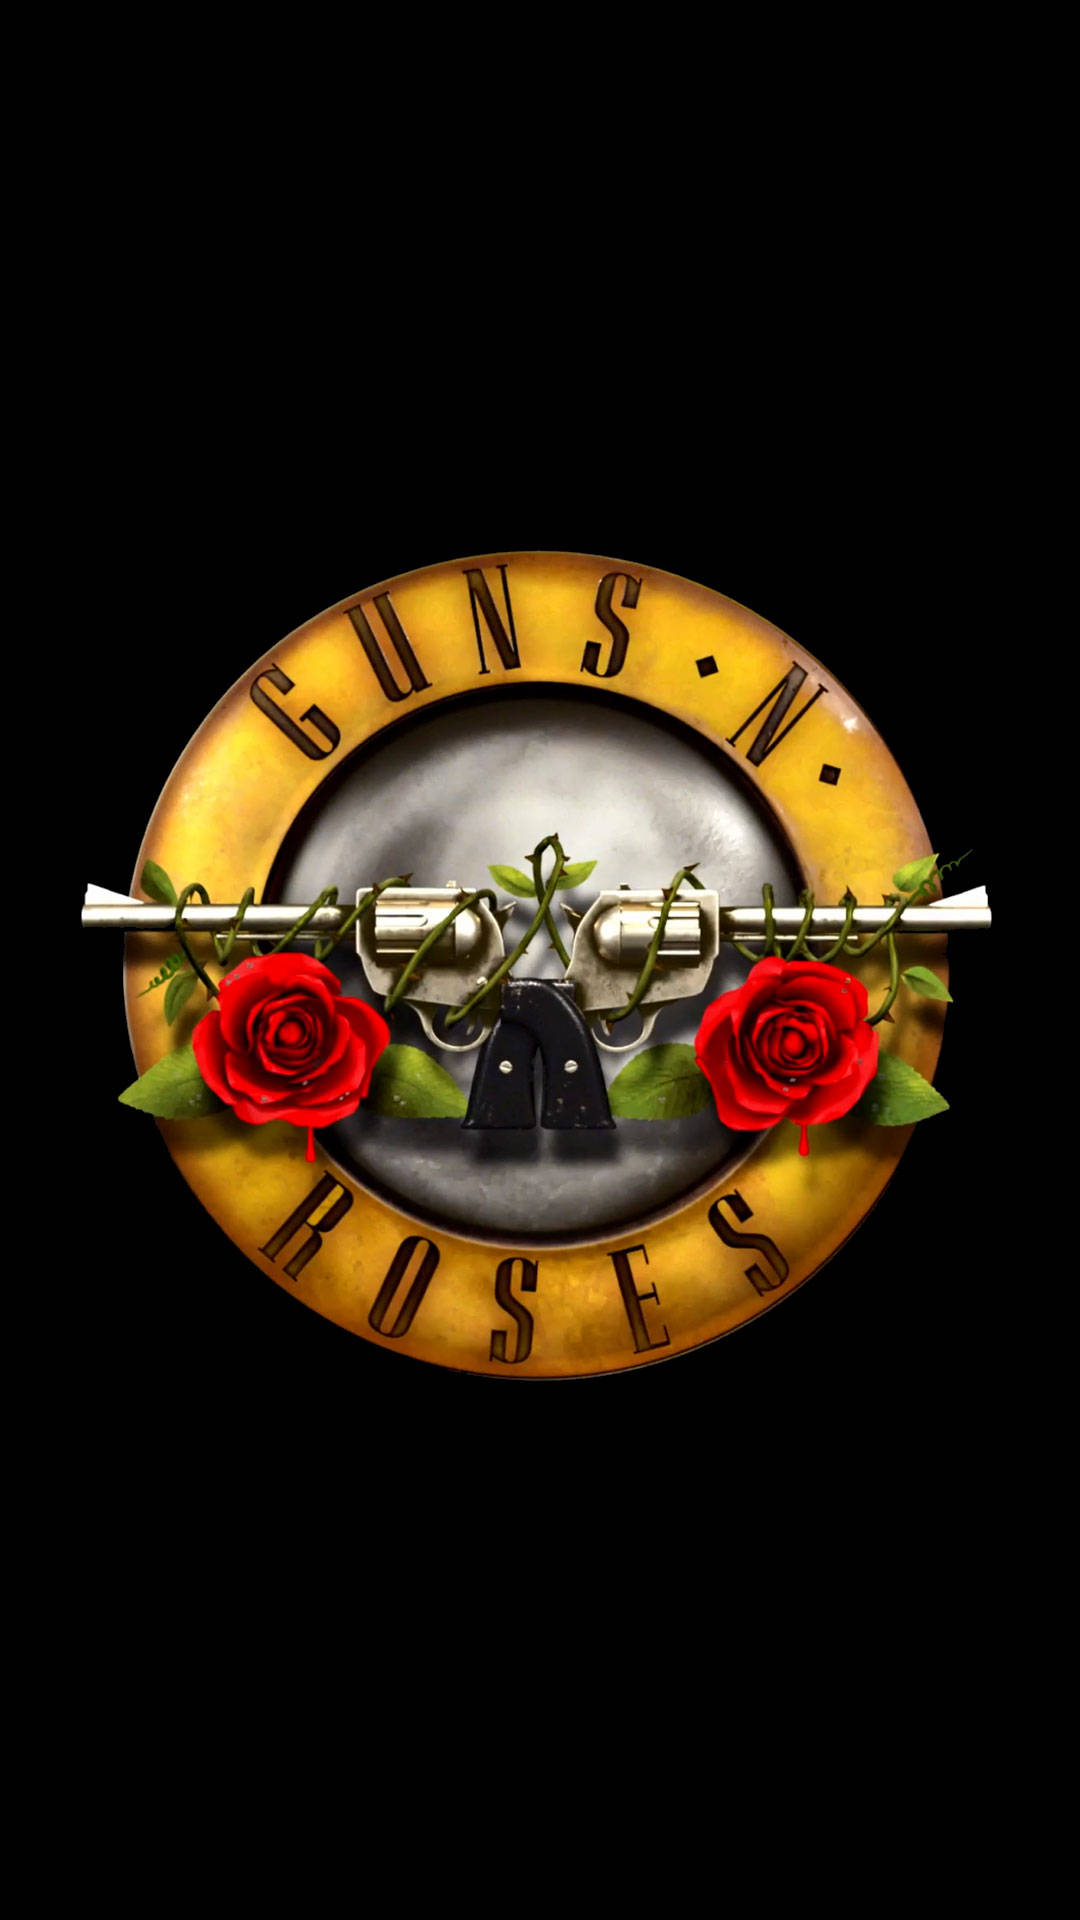 Billetter Guns N Roses Musik Cincinnati Ohio Wallpaper